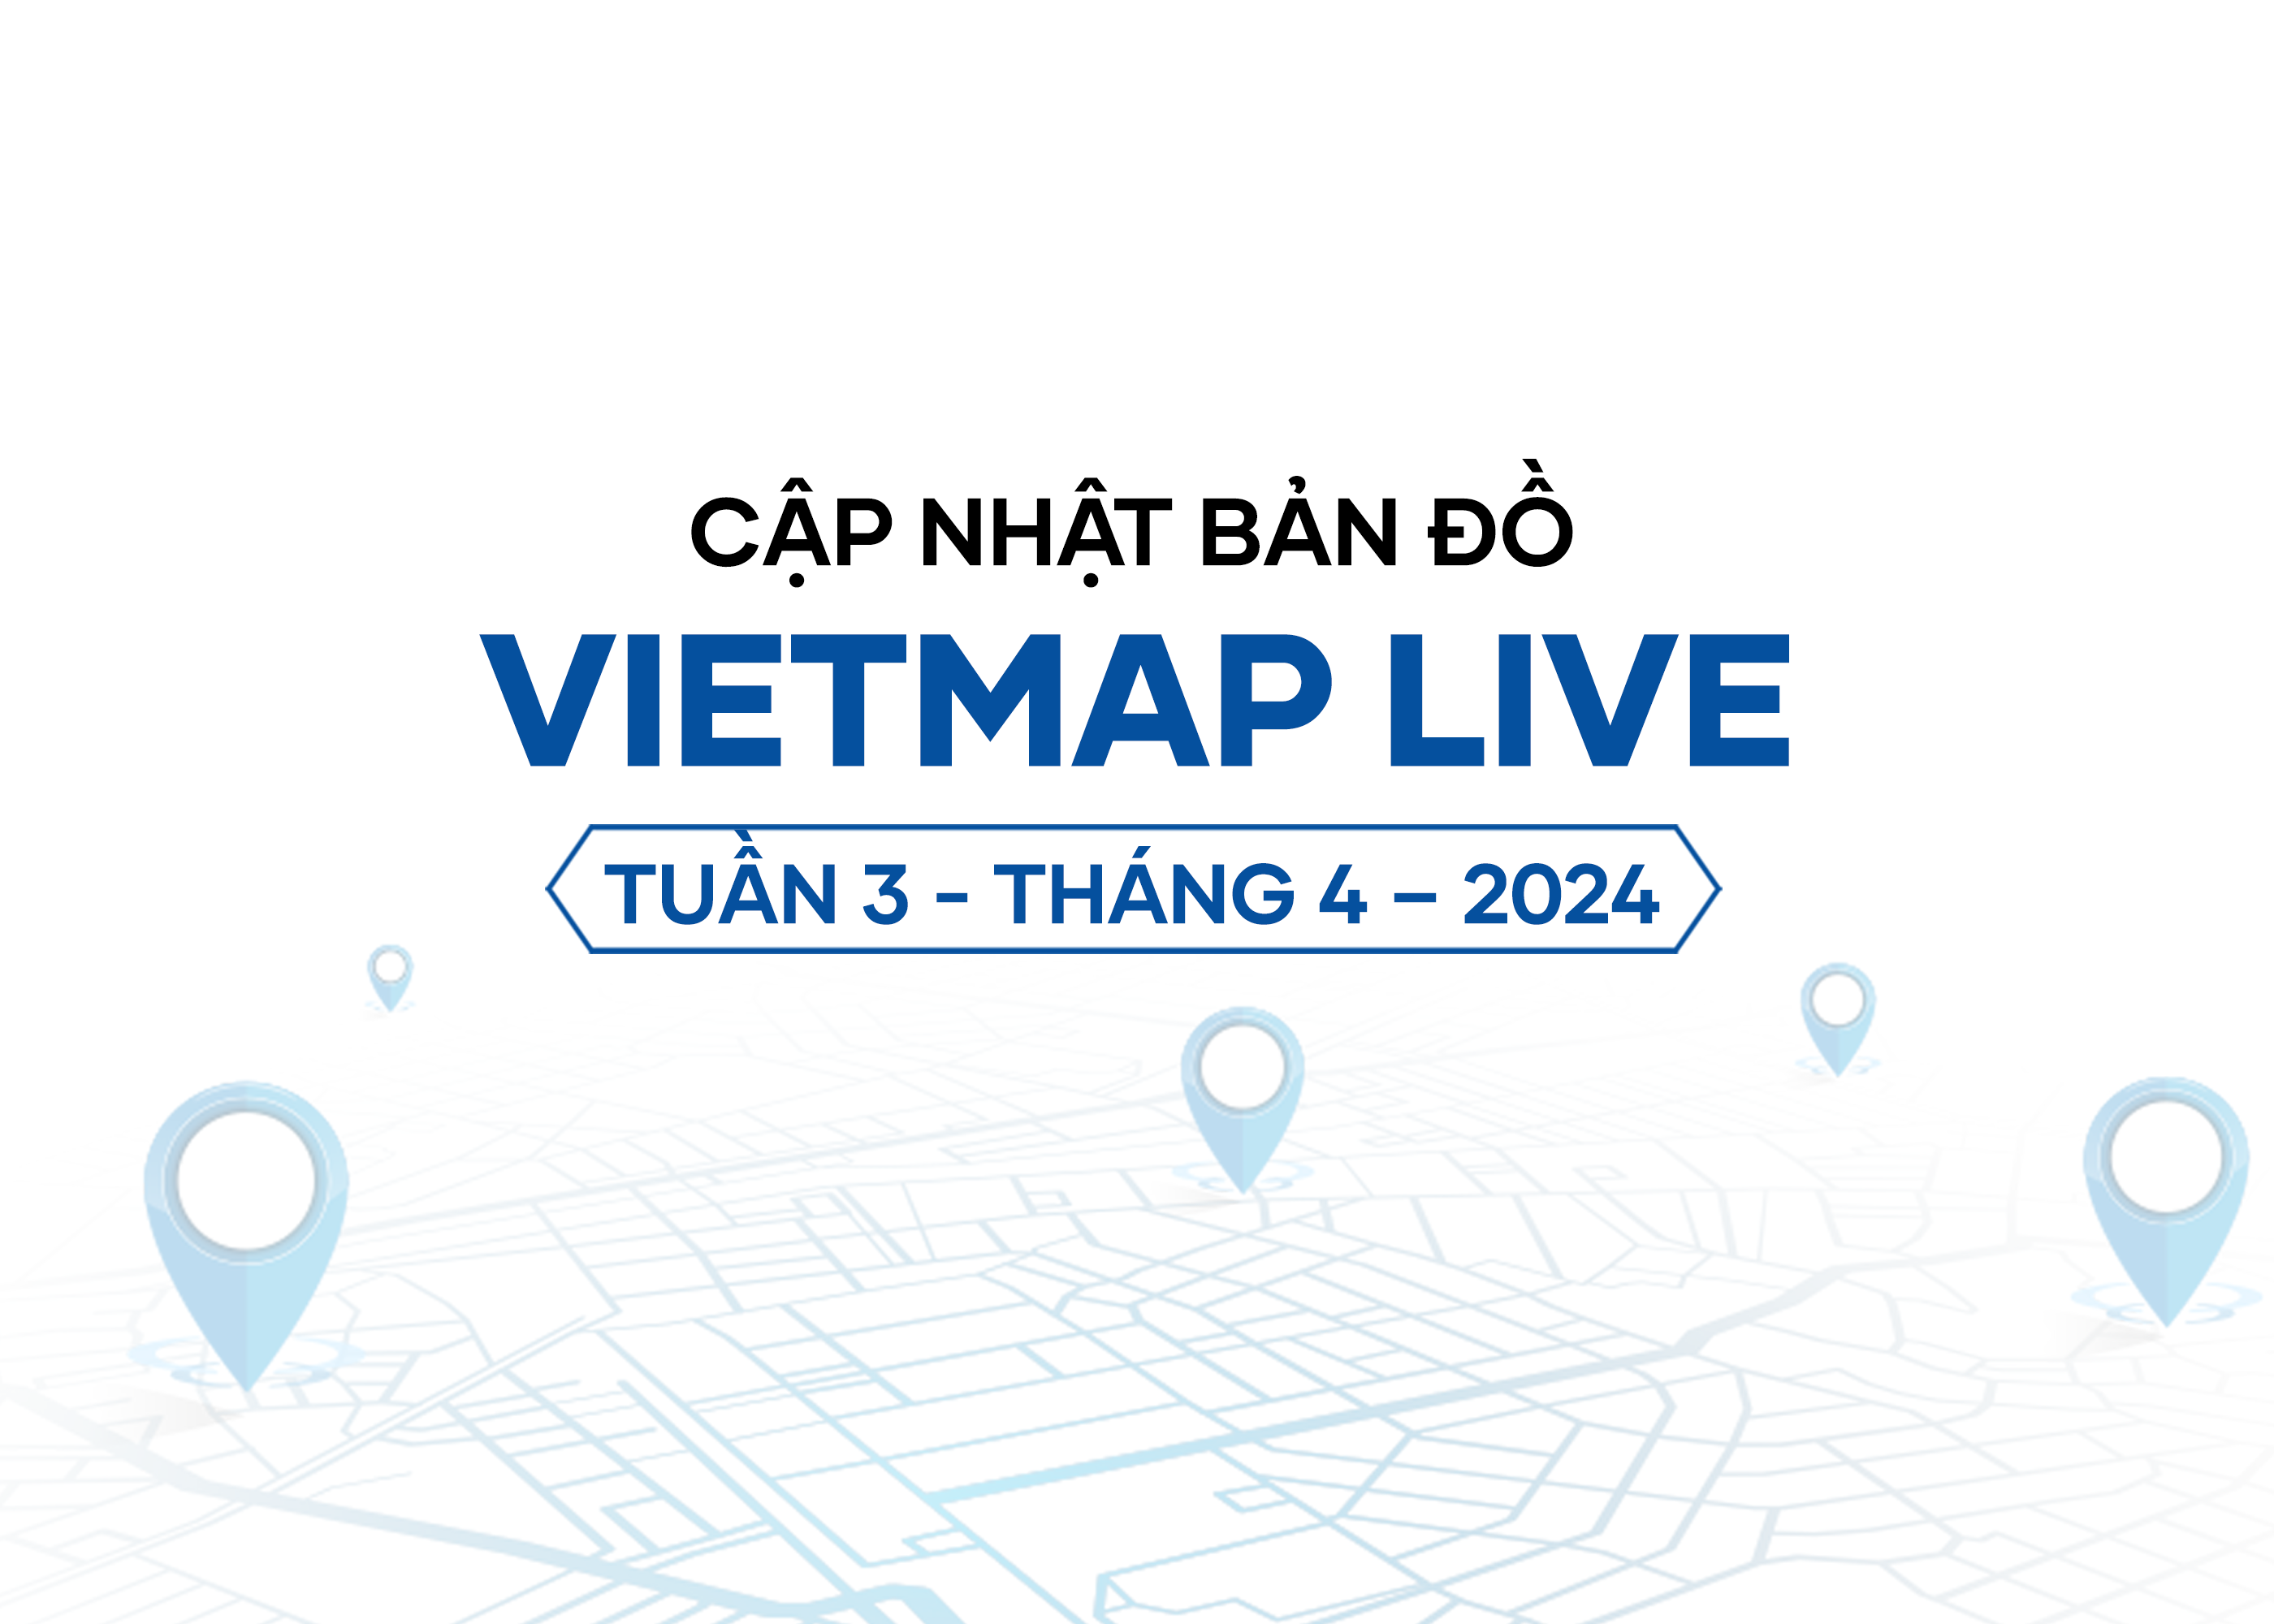 VIETMAP LIVE Cập Nhật Dữ Liệu Bản Đồ Tuần 3 - Tháng 4/2024